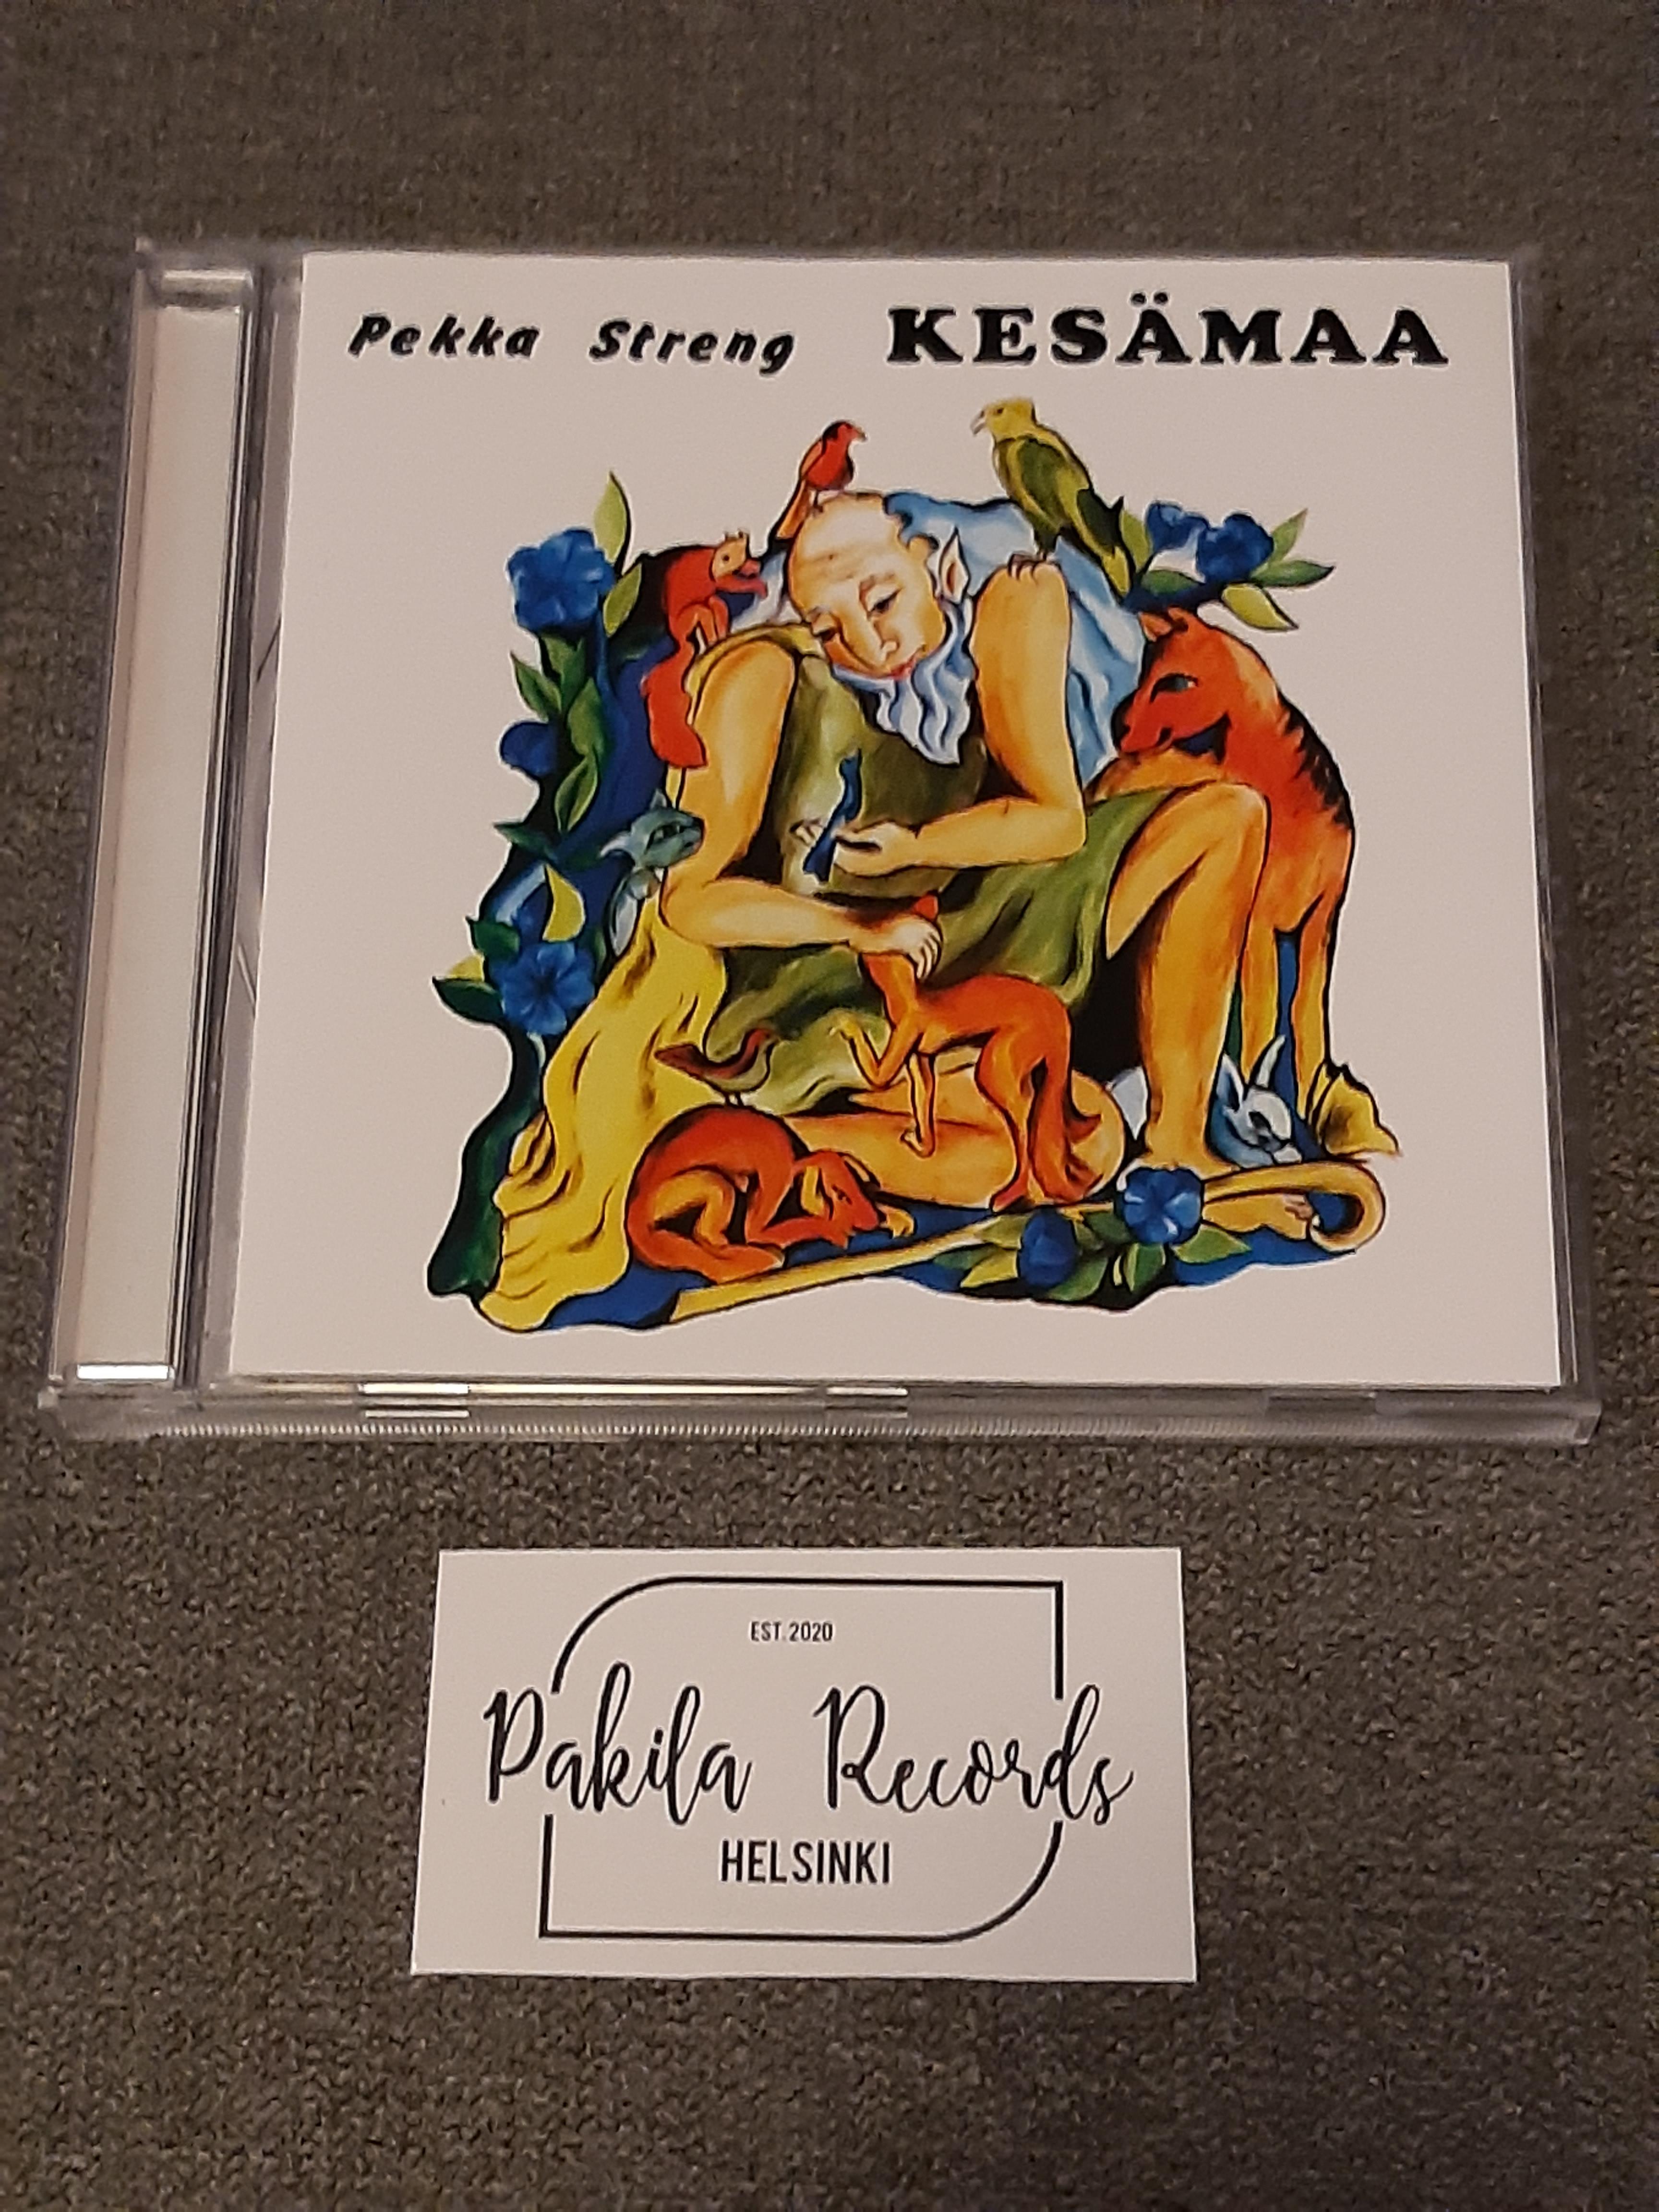 Pekka Streng - Kesämaa - CD (käytetty)